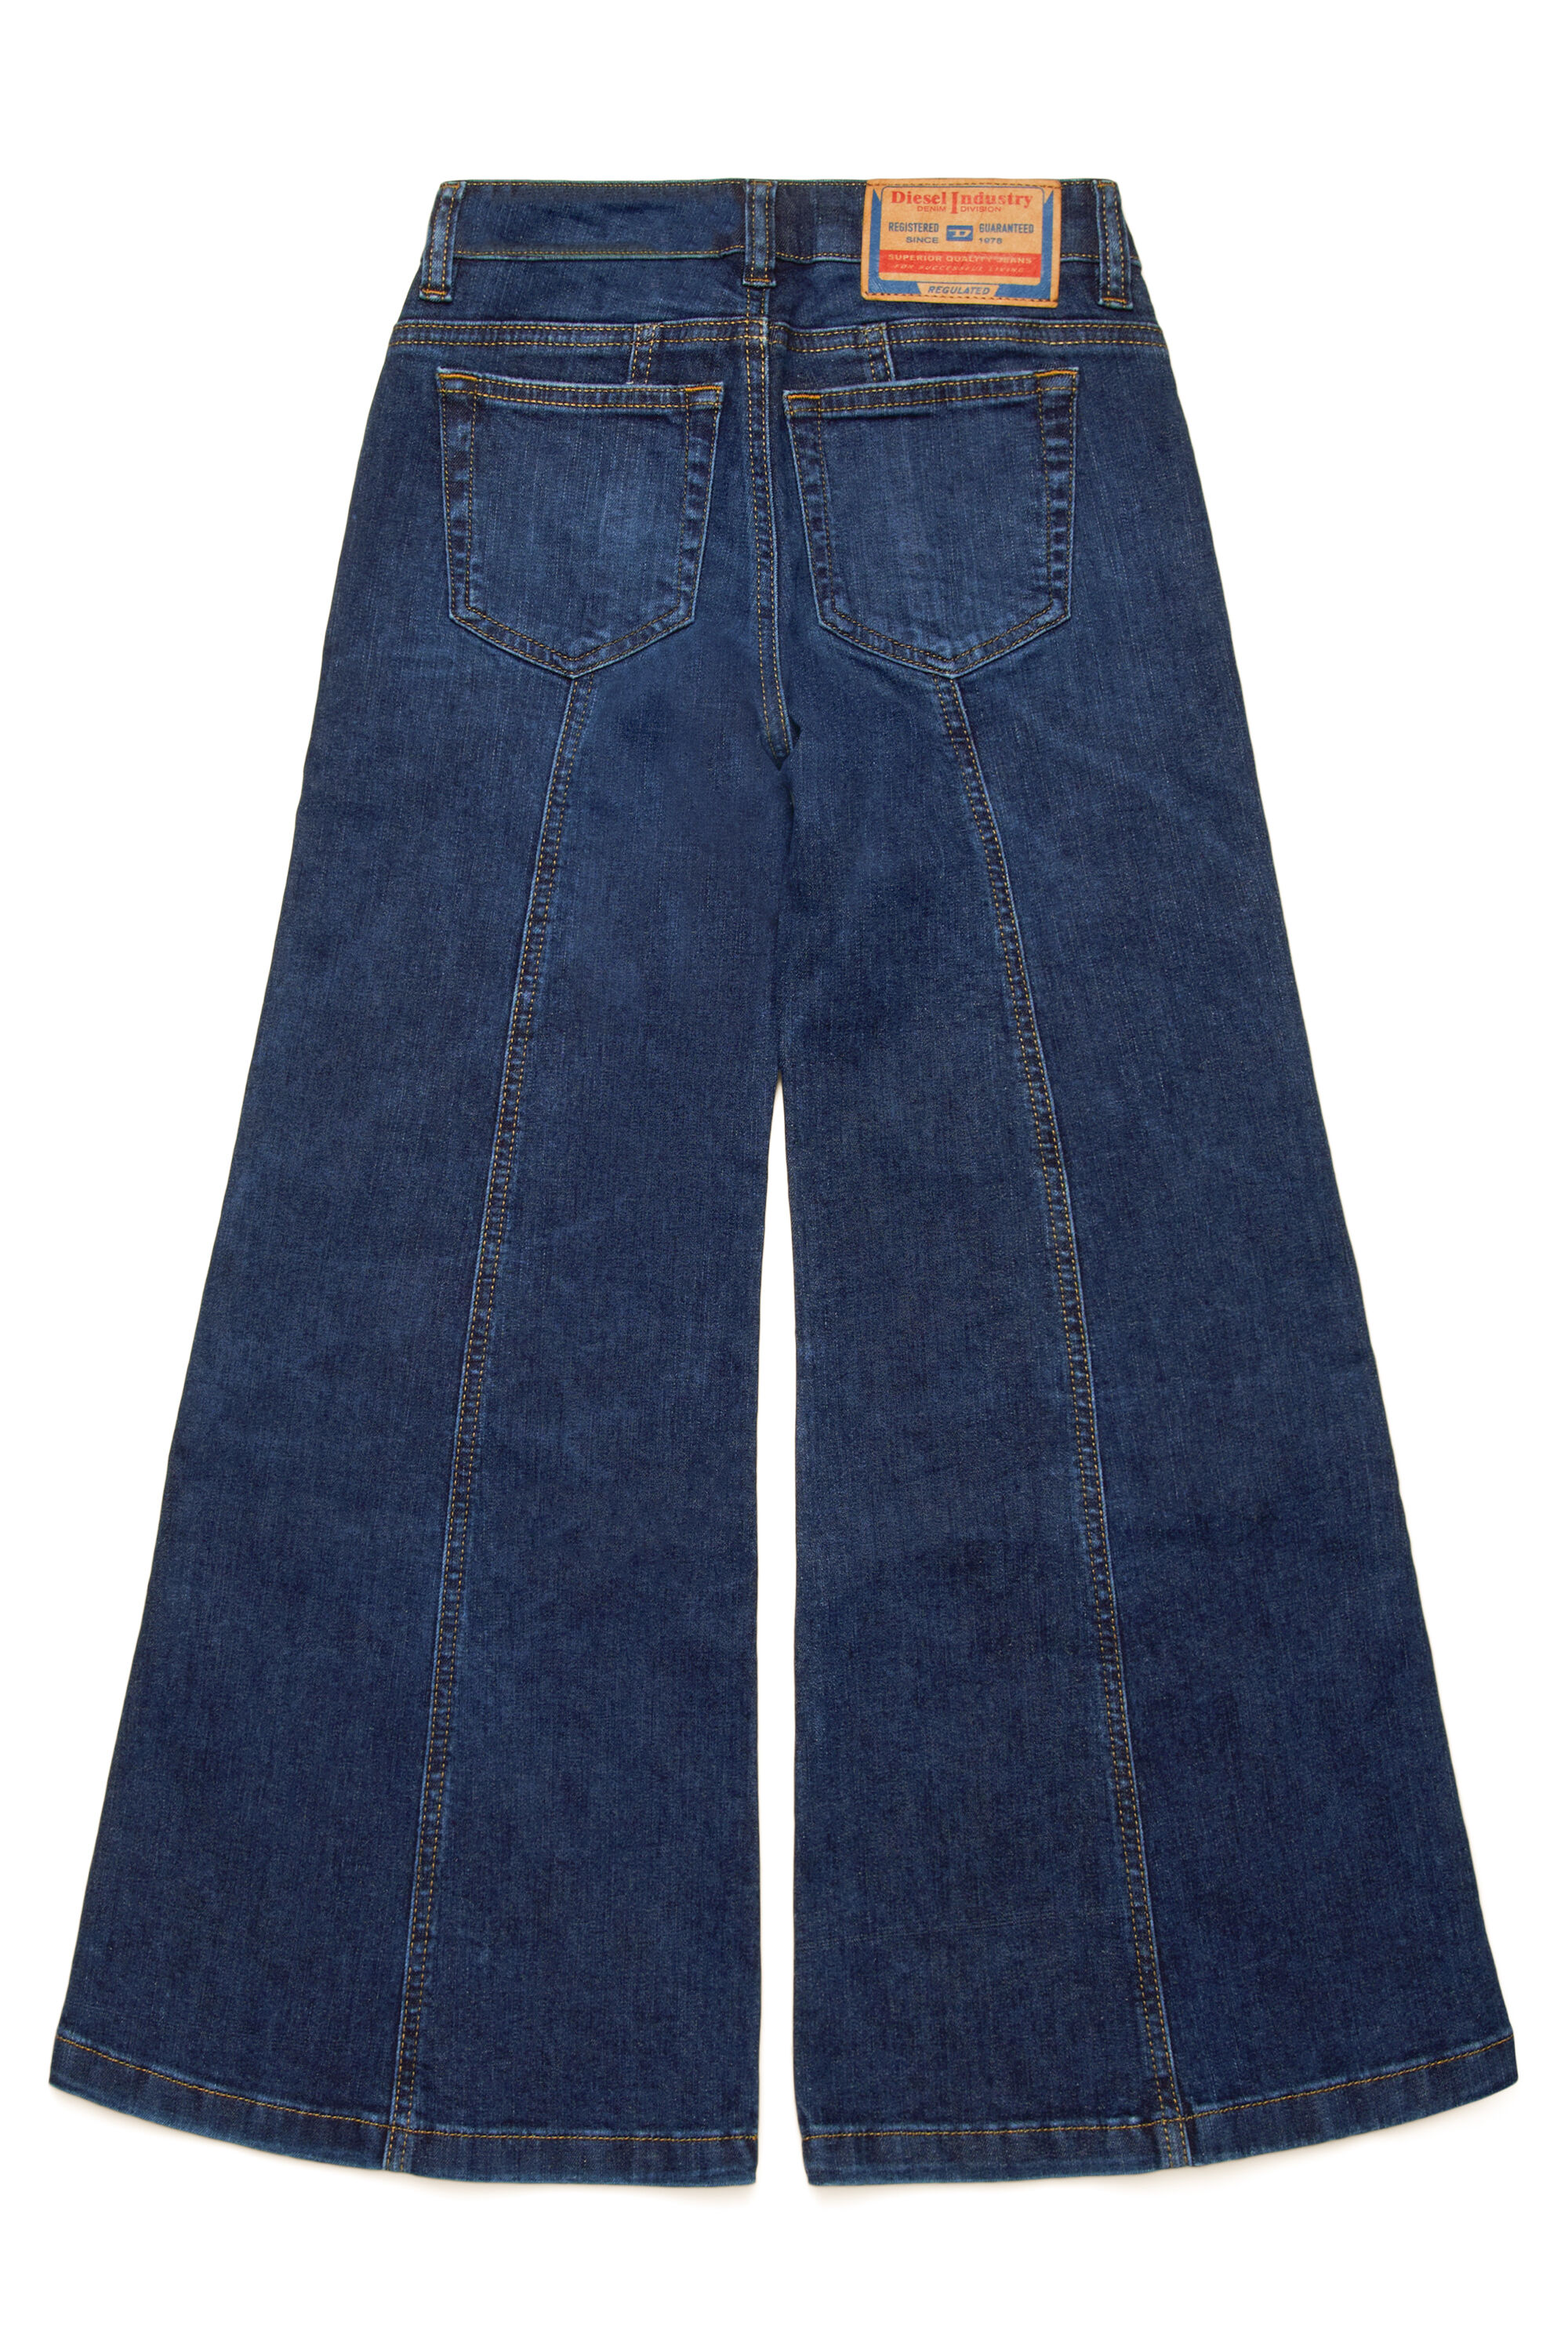 Diesel - D-AKII-J, Mujer Slim Jeans - D-Akii in Azul marino - Image 2